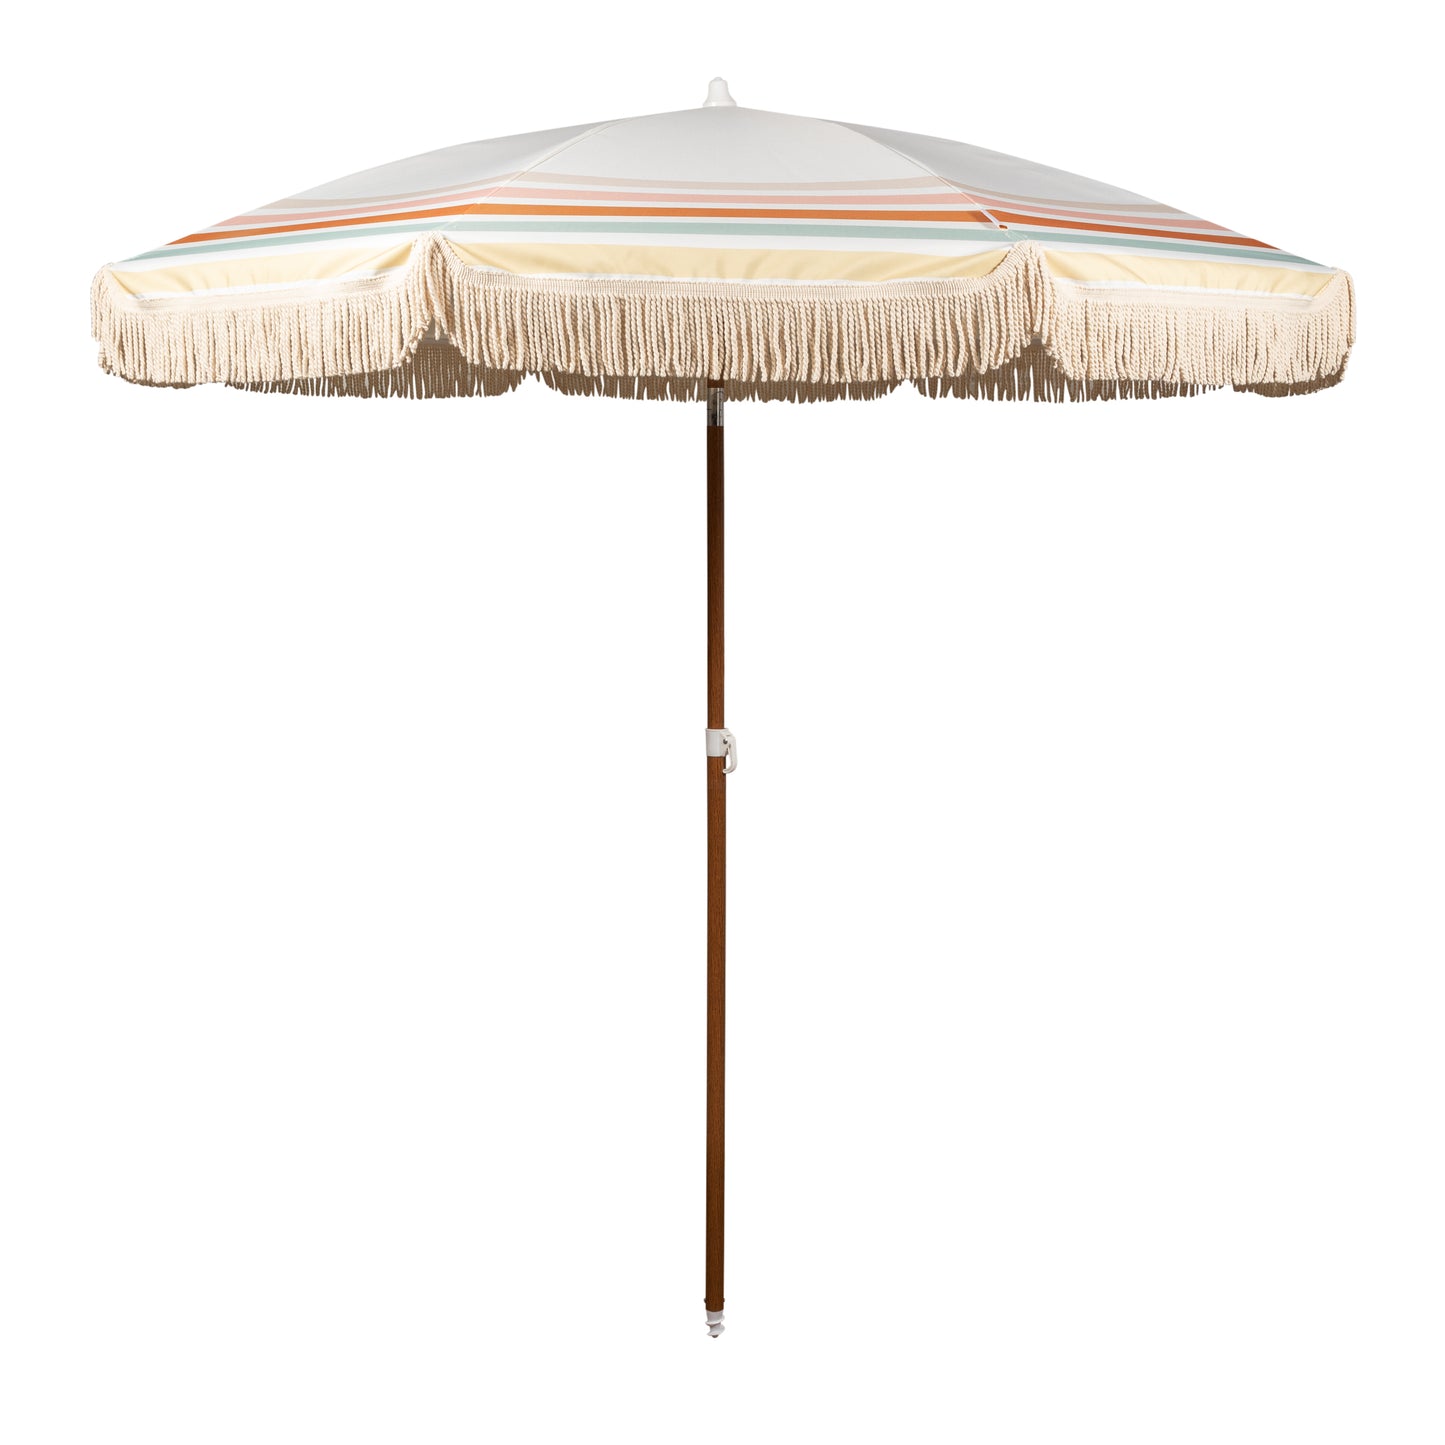 SHELTA Noosa Beach Umbrella – BANZ® Carewear USA